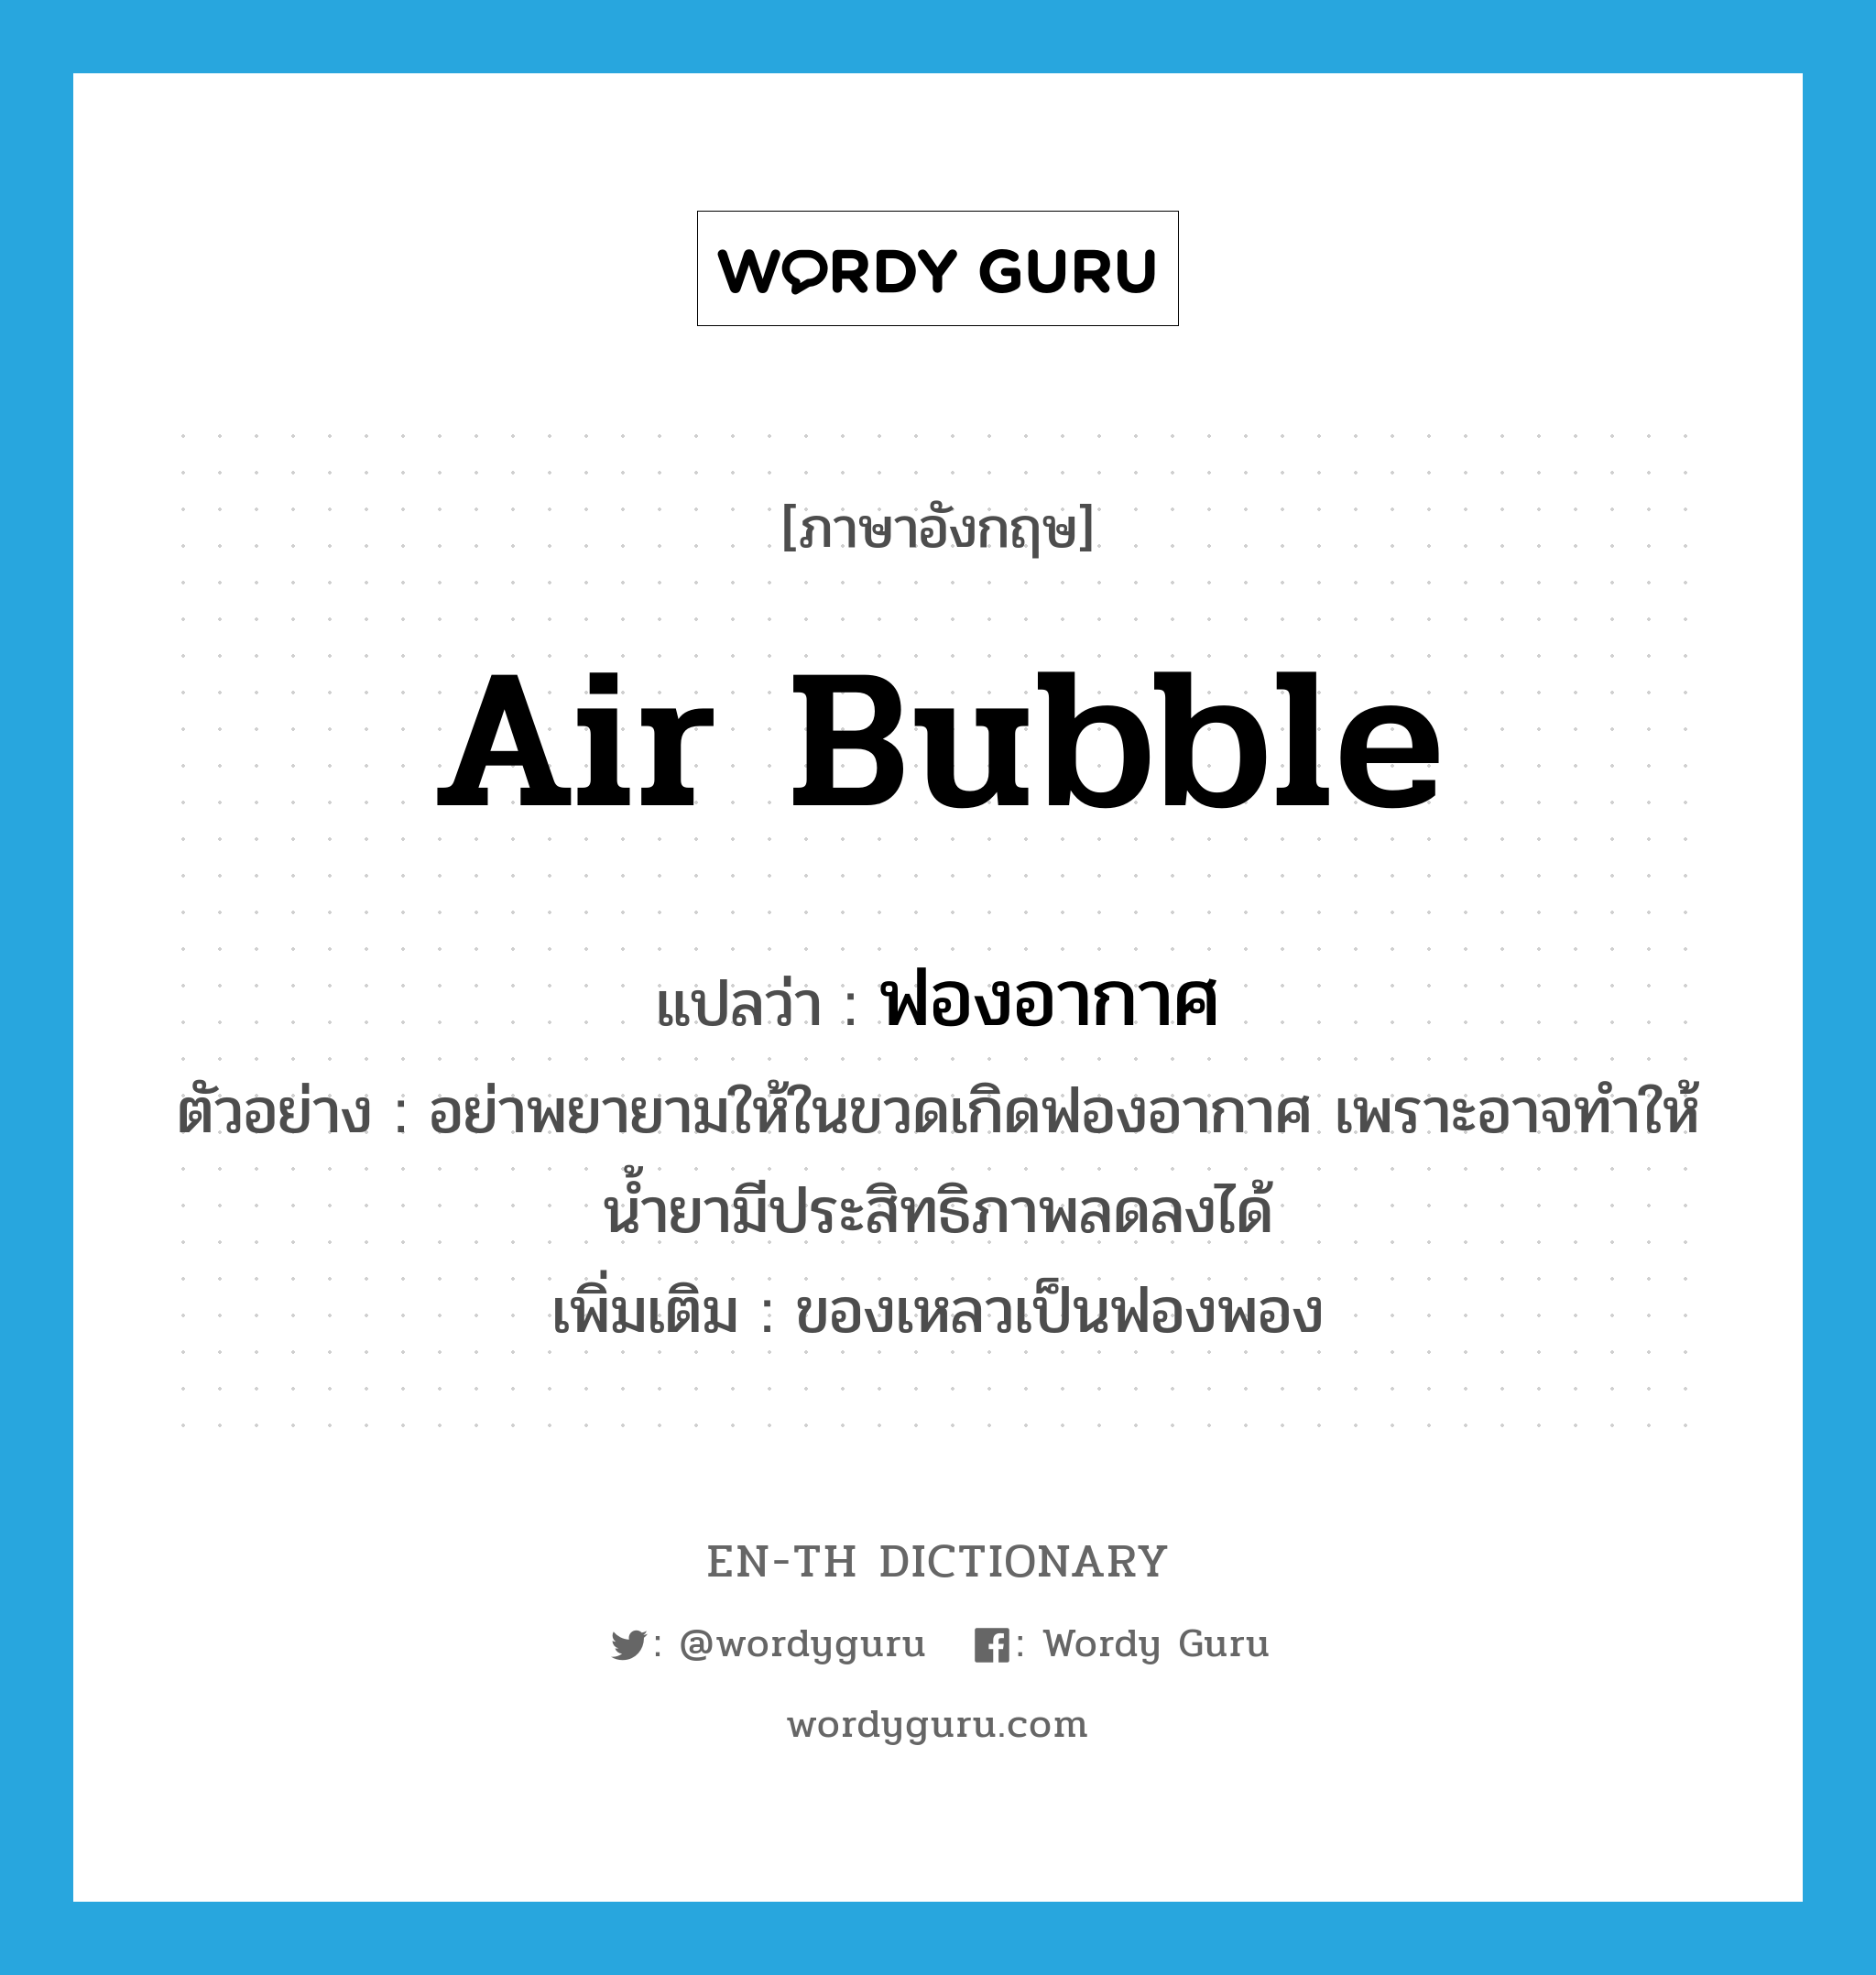 air bubble แปลว่า?, คำศัพท์ภาษาอังกฤษ air bubble แปลว่า ฟองอากาศ ประเภท N ตัวอย่าง อย่าพยายามให้ในขวดเกิดฟองอากาศ เพราะอาจทำให้น้ำยามีประสิทธิภาพลดลงได้ เพิ่มเติม ของเหลวเป็นฟองพอง หมวด N